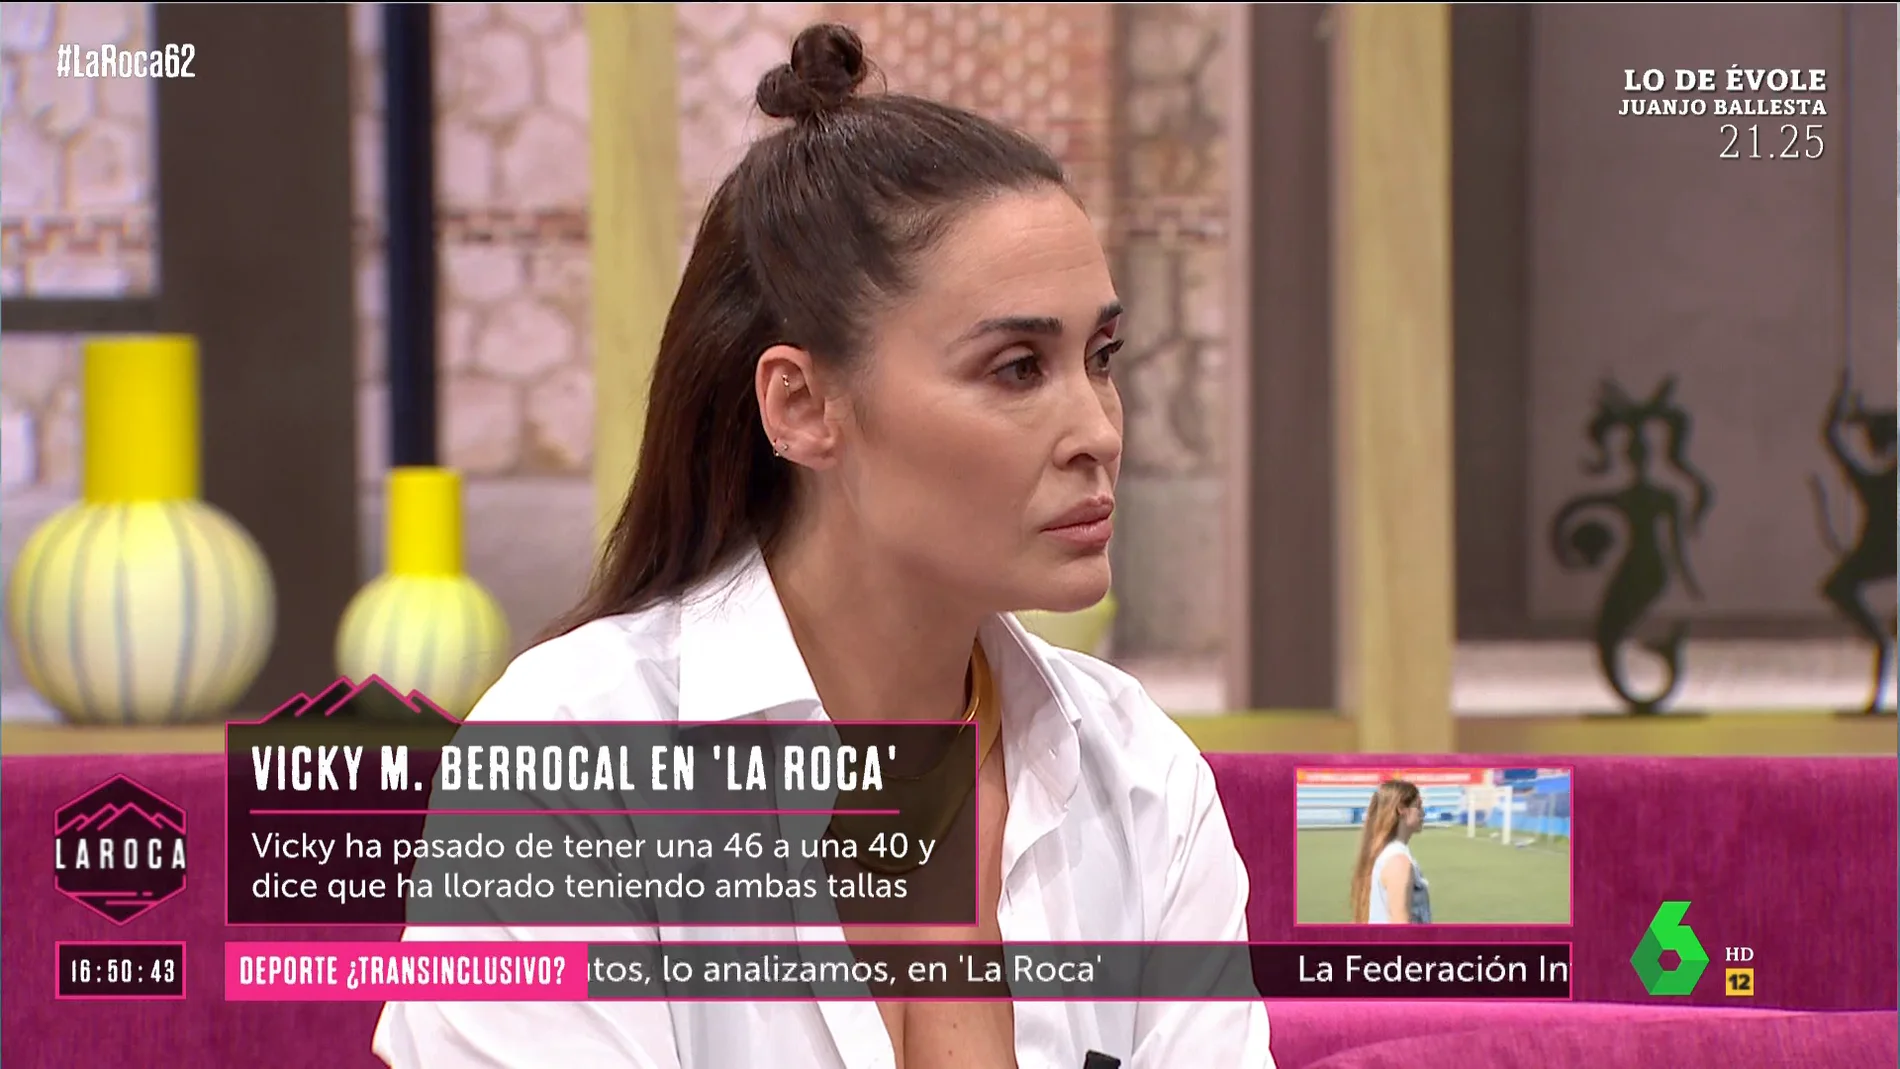 Vicky Martín Berrocal asegura no haber encontrado a ninguna mujer satisfecha con su cuerpo: "Ni modelos ni mujeres referentes"